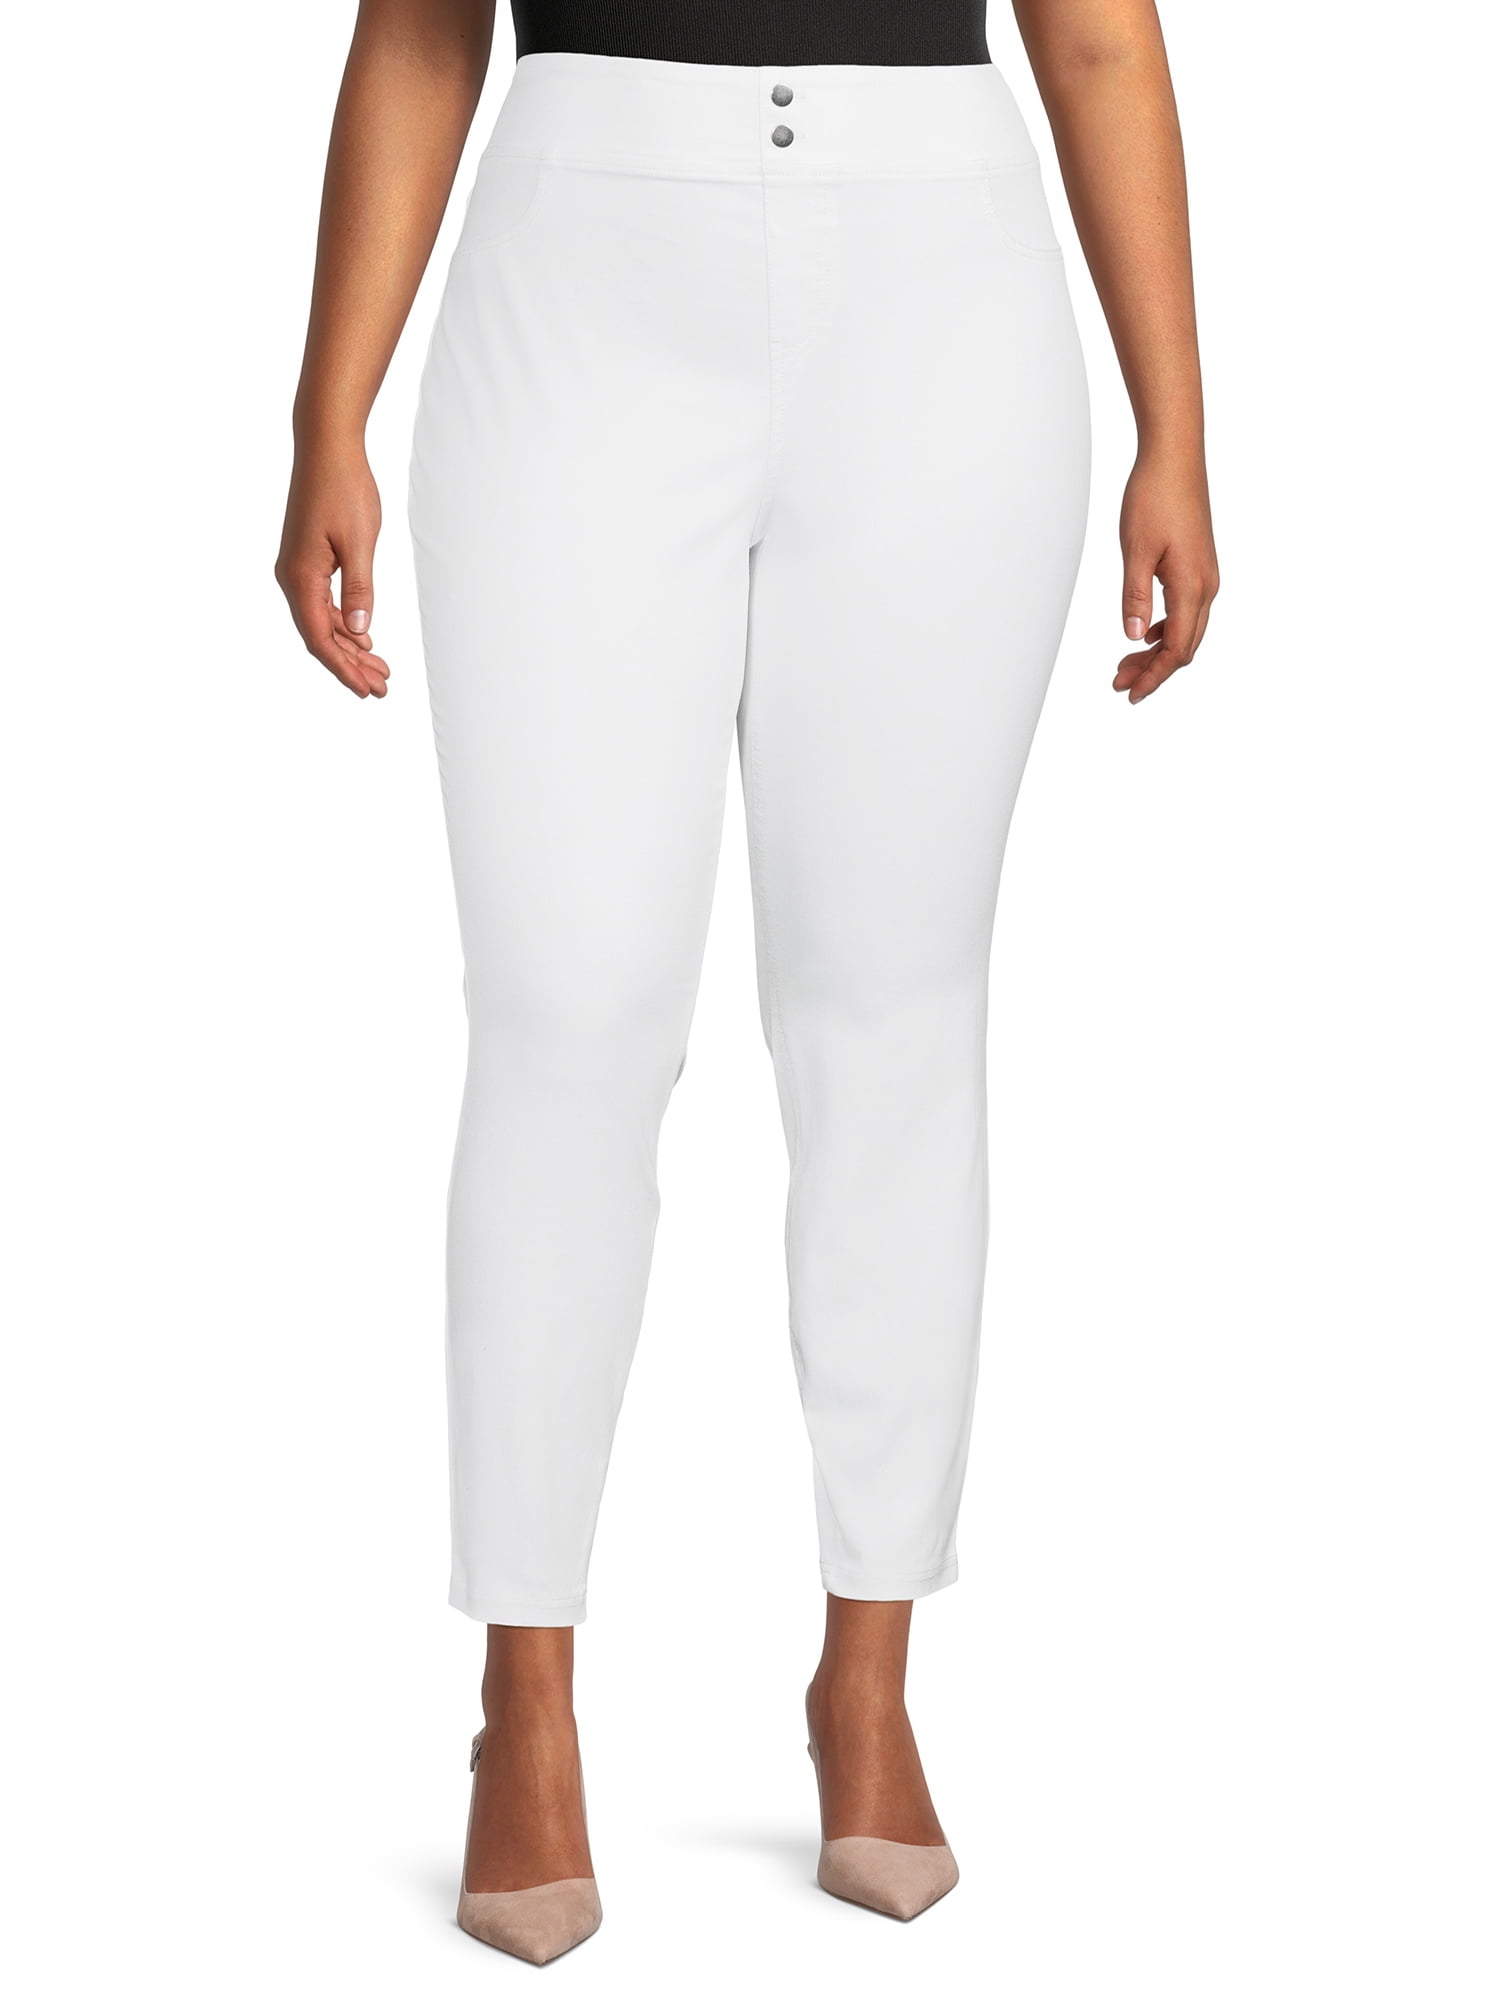 Terra & Sky Women's Plus Size Jegging Skinny Jeans - Walmart.com